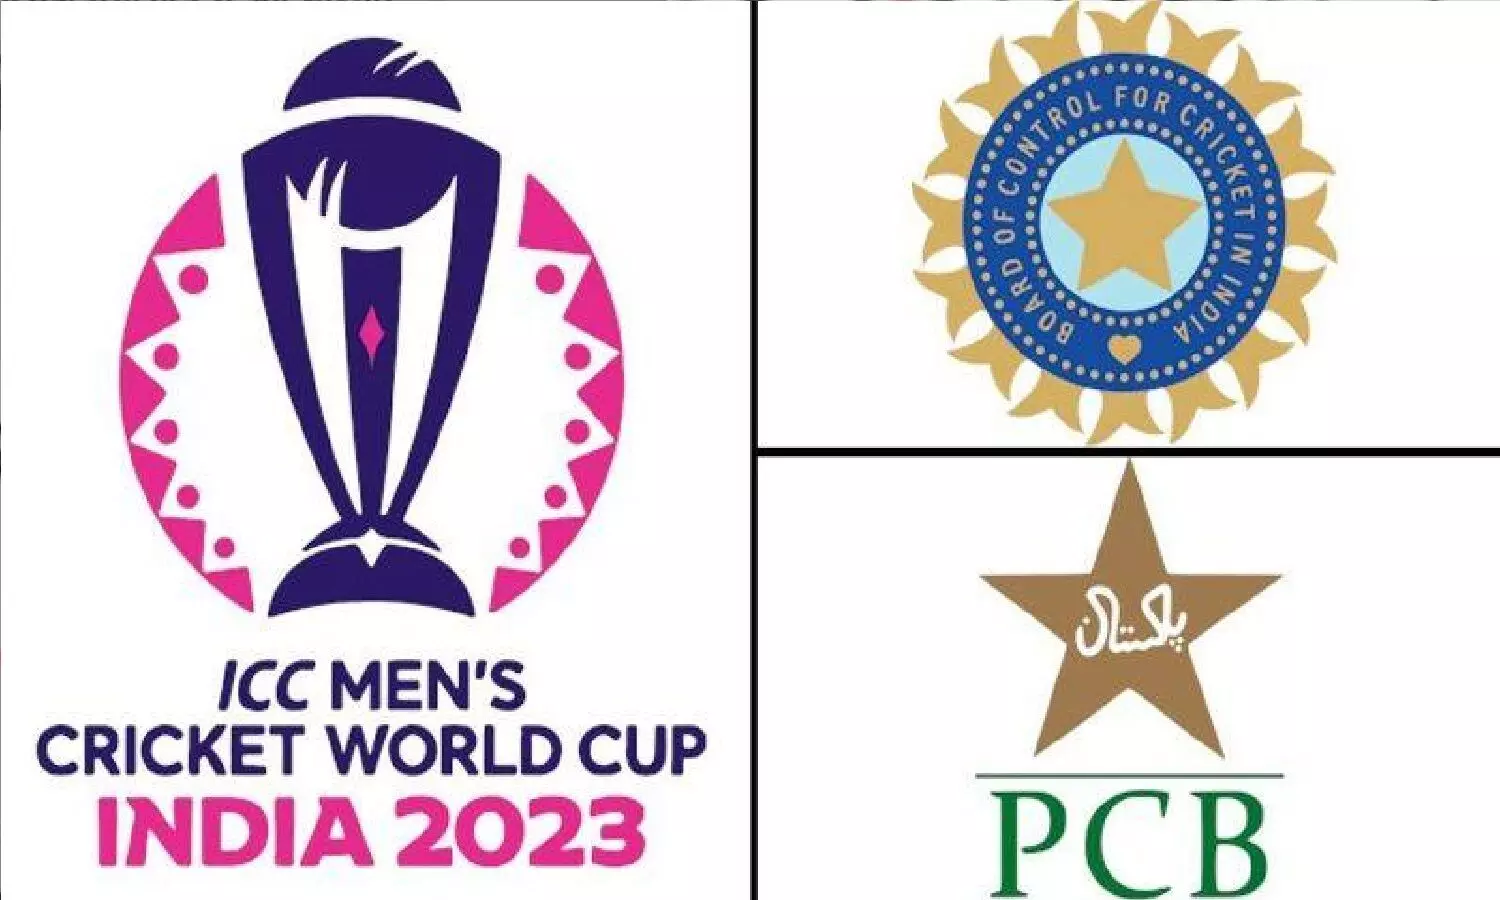 Pakistan ICC World Cup 2023 को Boycott करने की धमकी दे रहा! इससे पाकिस्तान का ही बड़ा नुकसान हो जाएगा